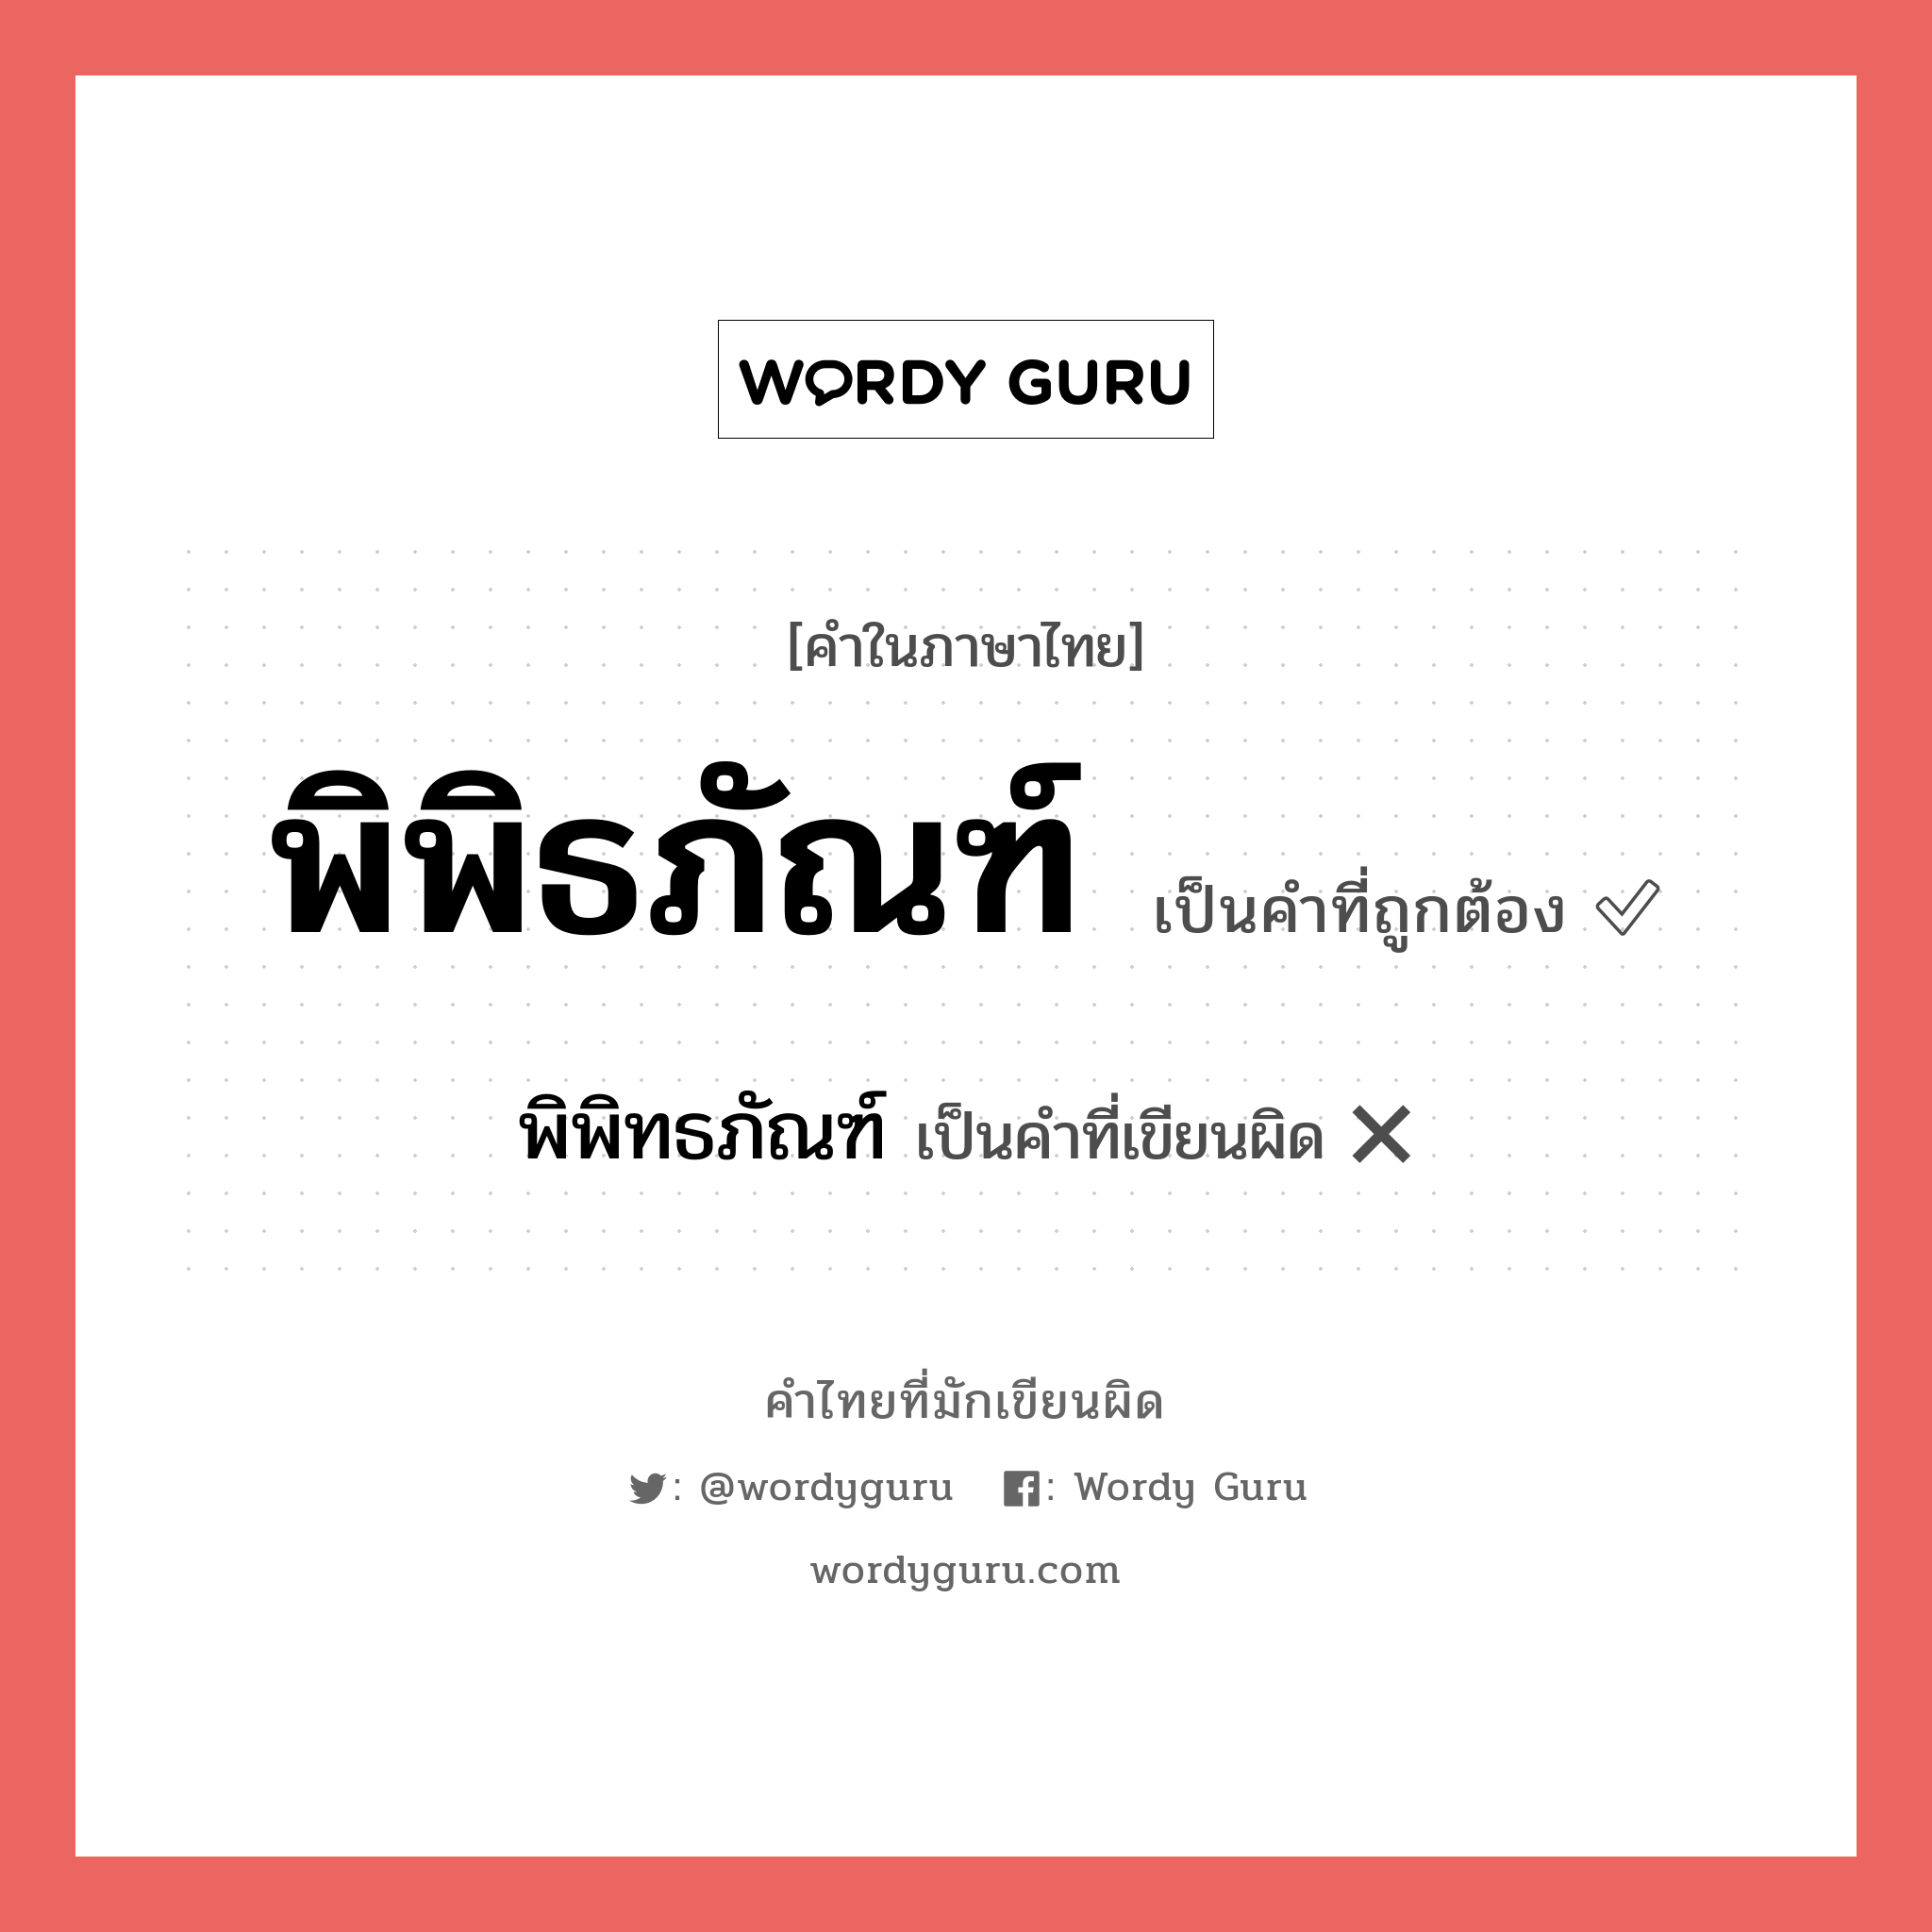 พิพิธภัณฑ์ หรือ พิพิทธภัณฑ์ คำไหนเขียนถูก?, คำในภาษาไทยที่มักเขียนผิด พิพิธภัณฑ์ คำที่ผิด ❌ พิพิทธภัณฑ์